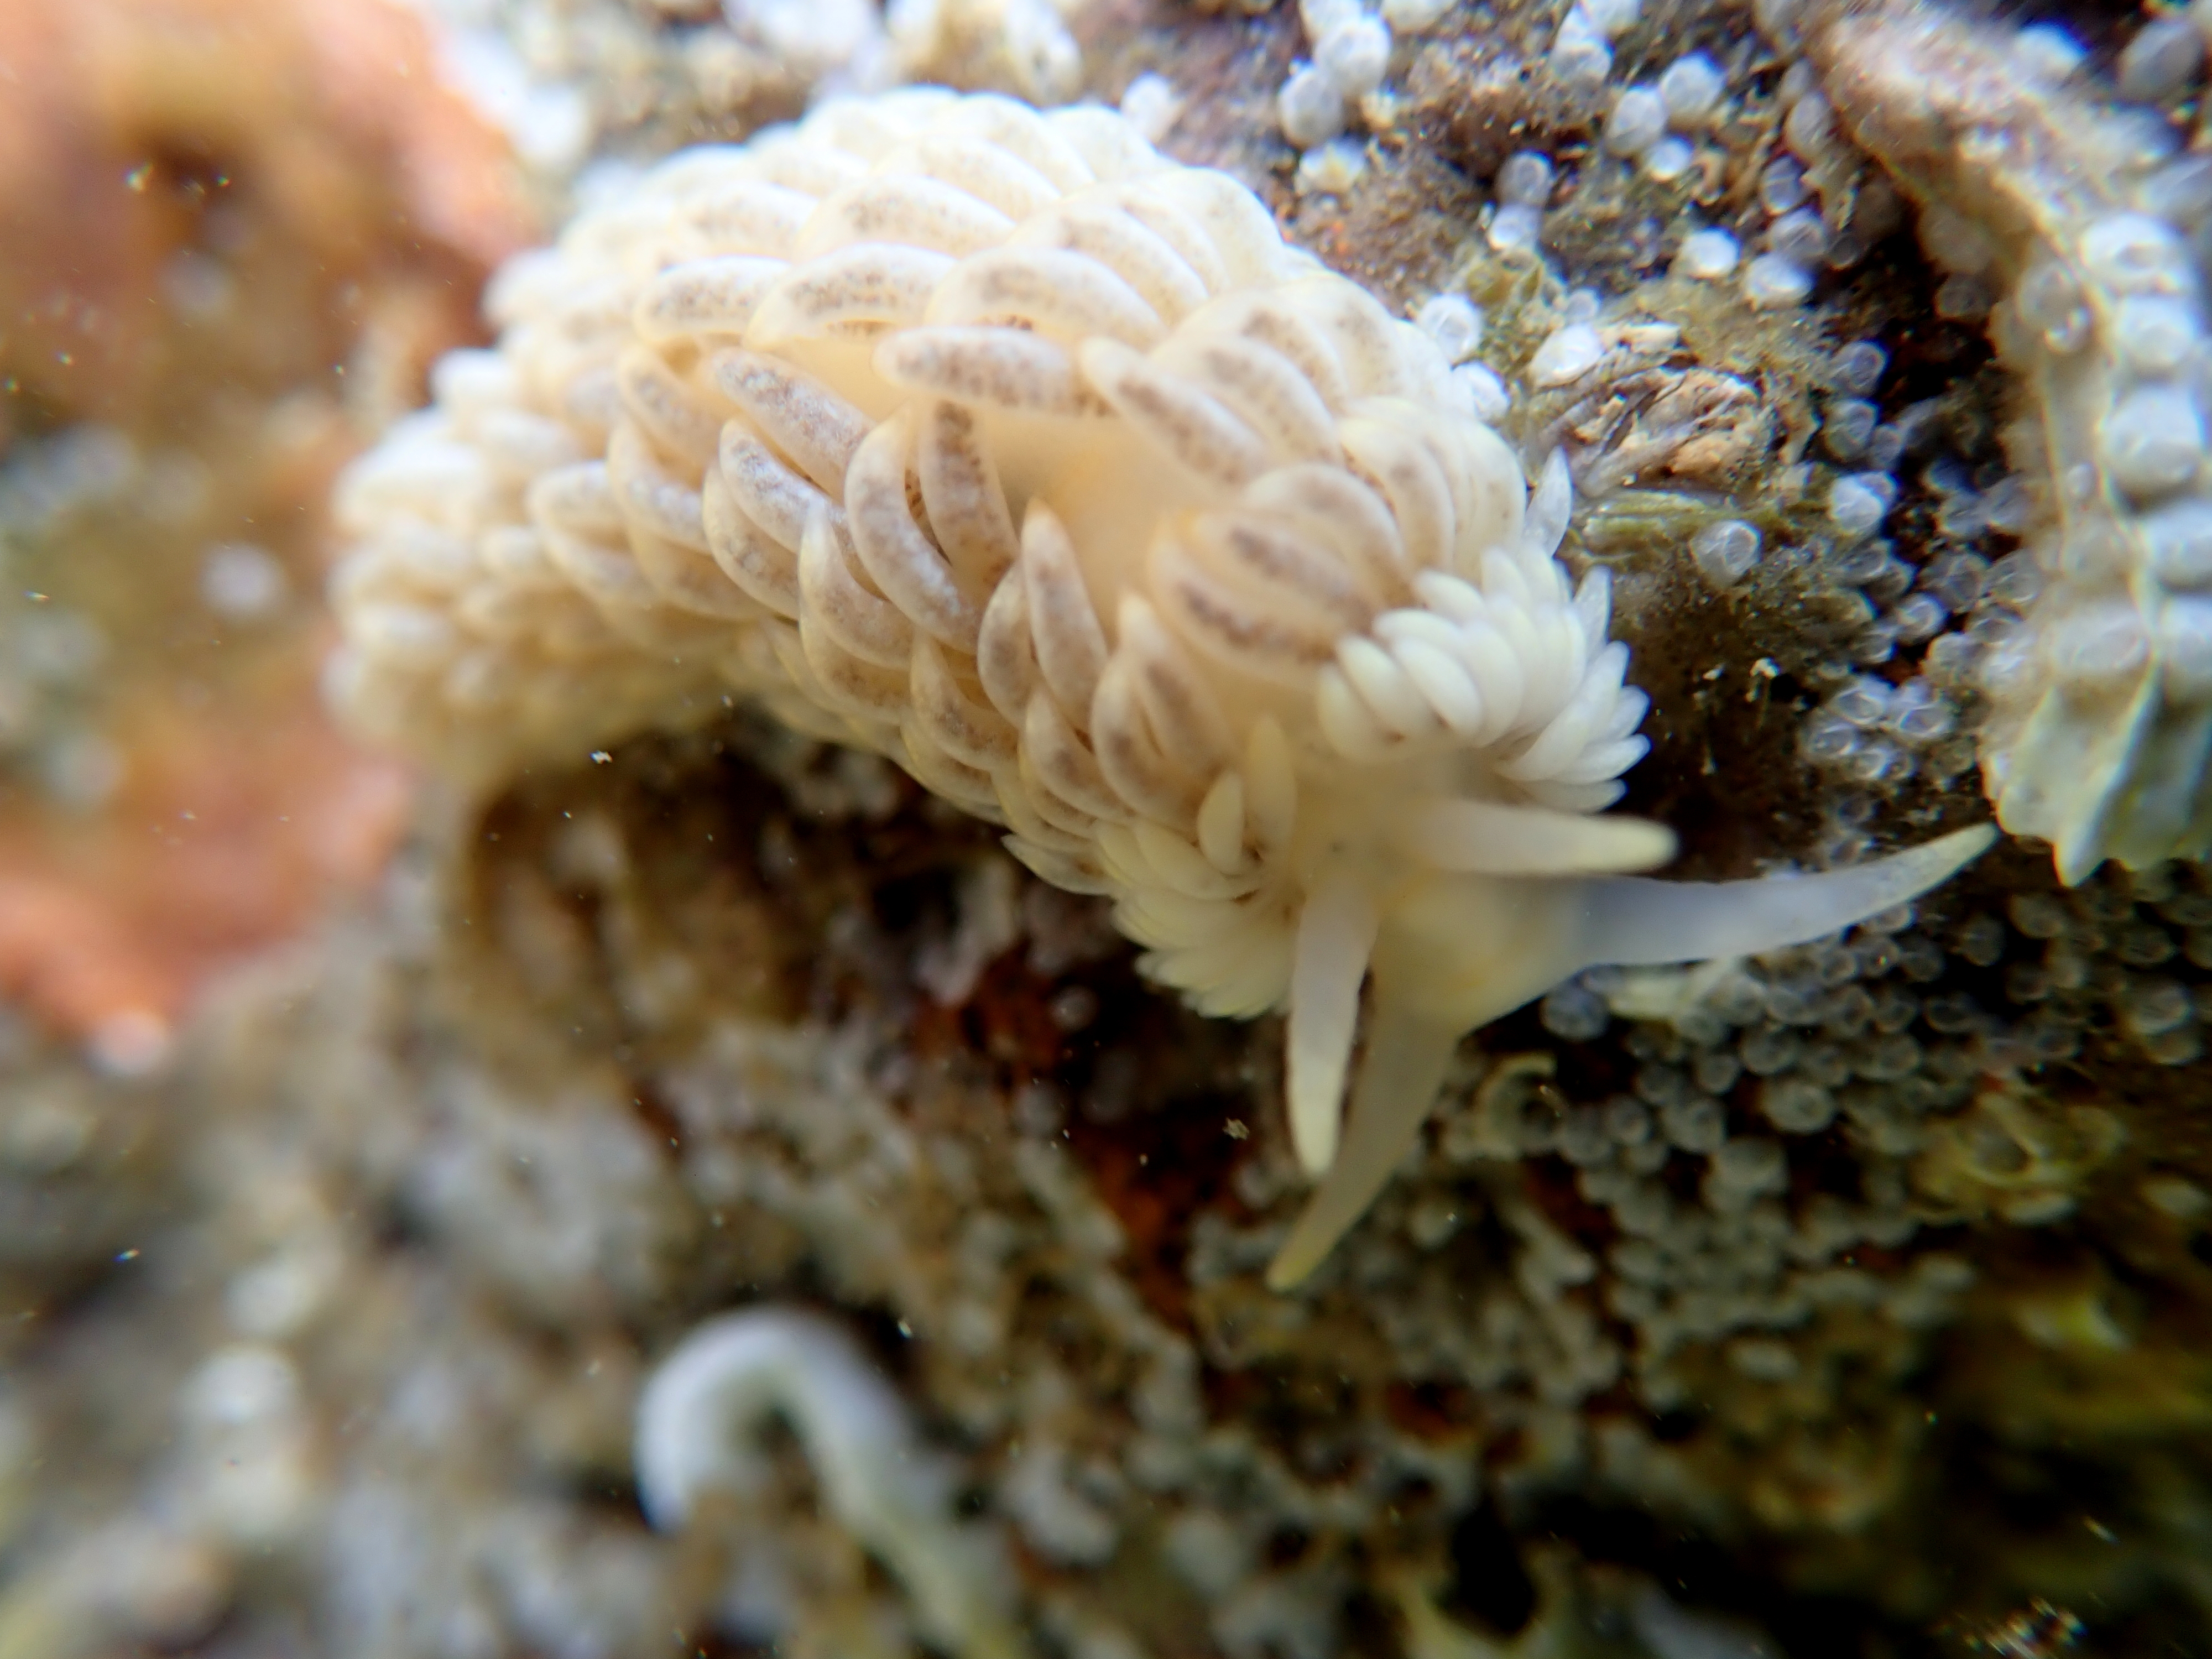 Aeolidella alderi - the white-ruffed sea slug